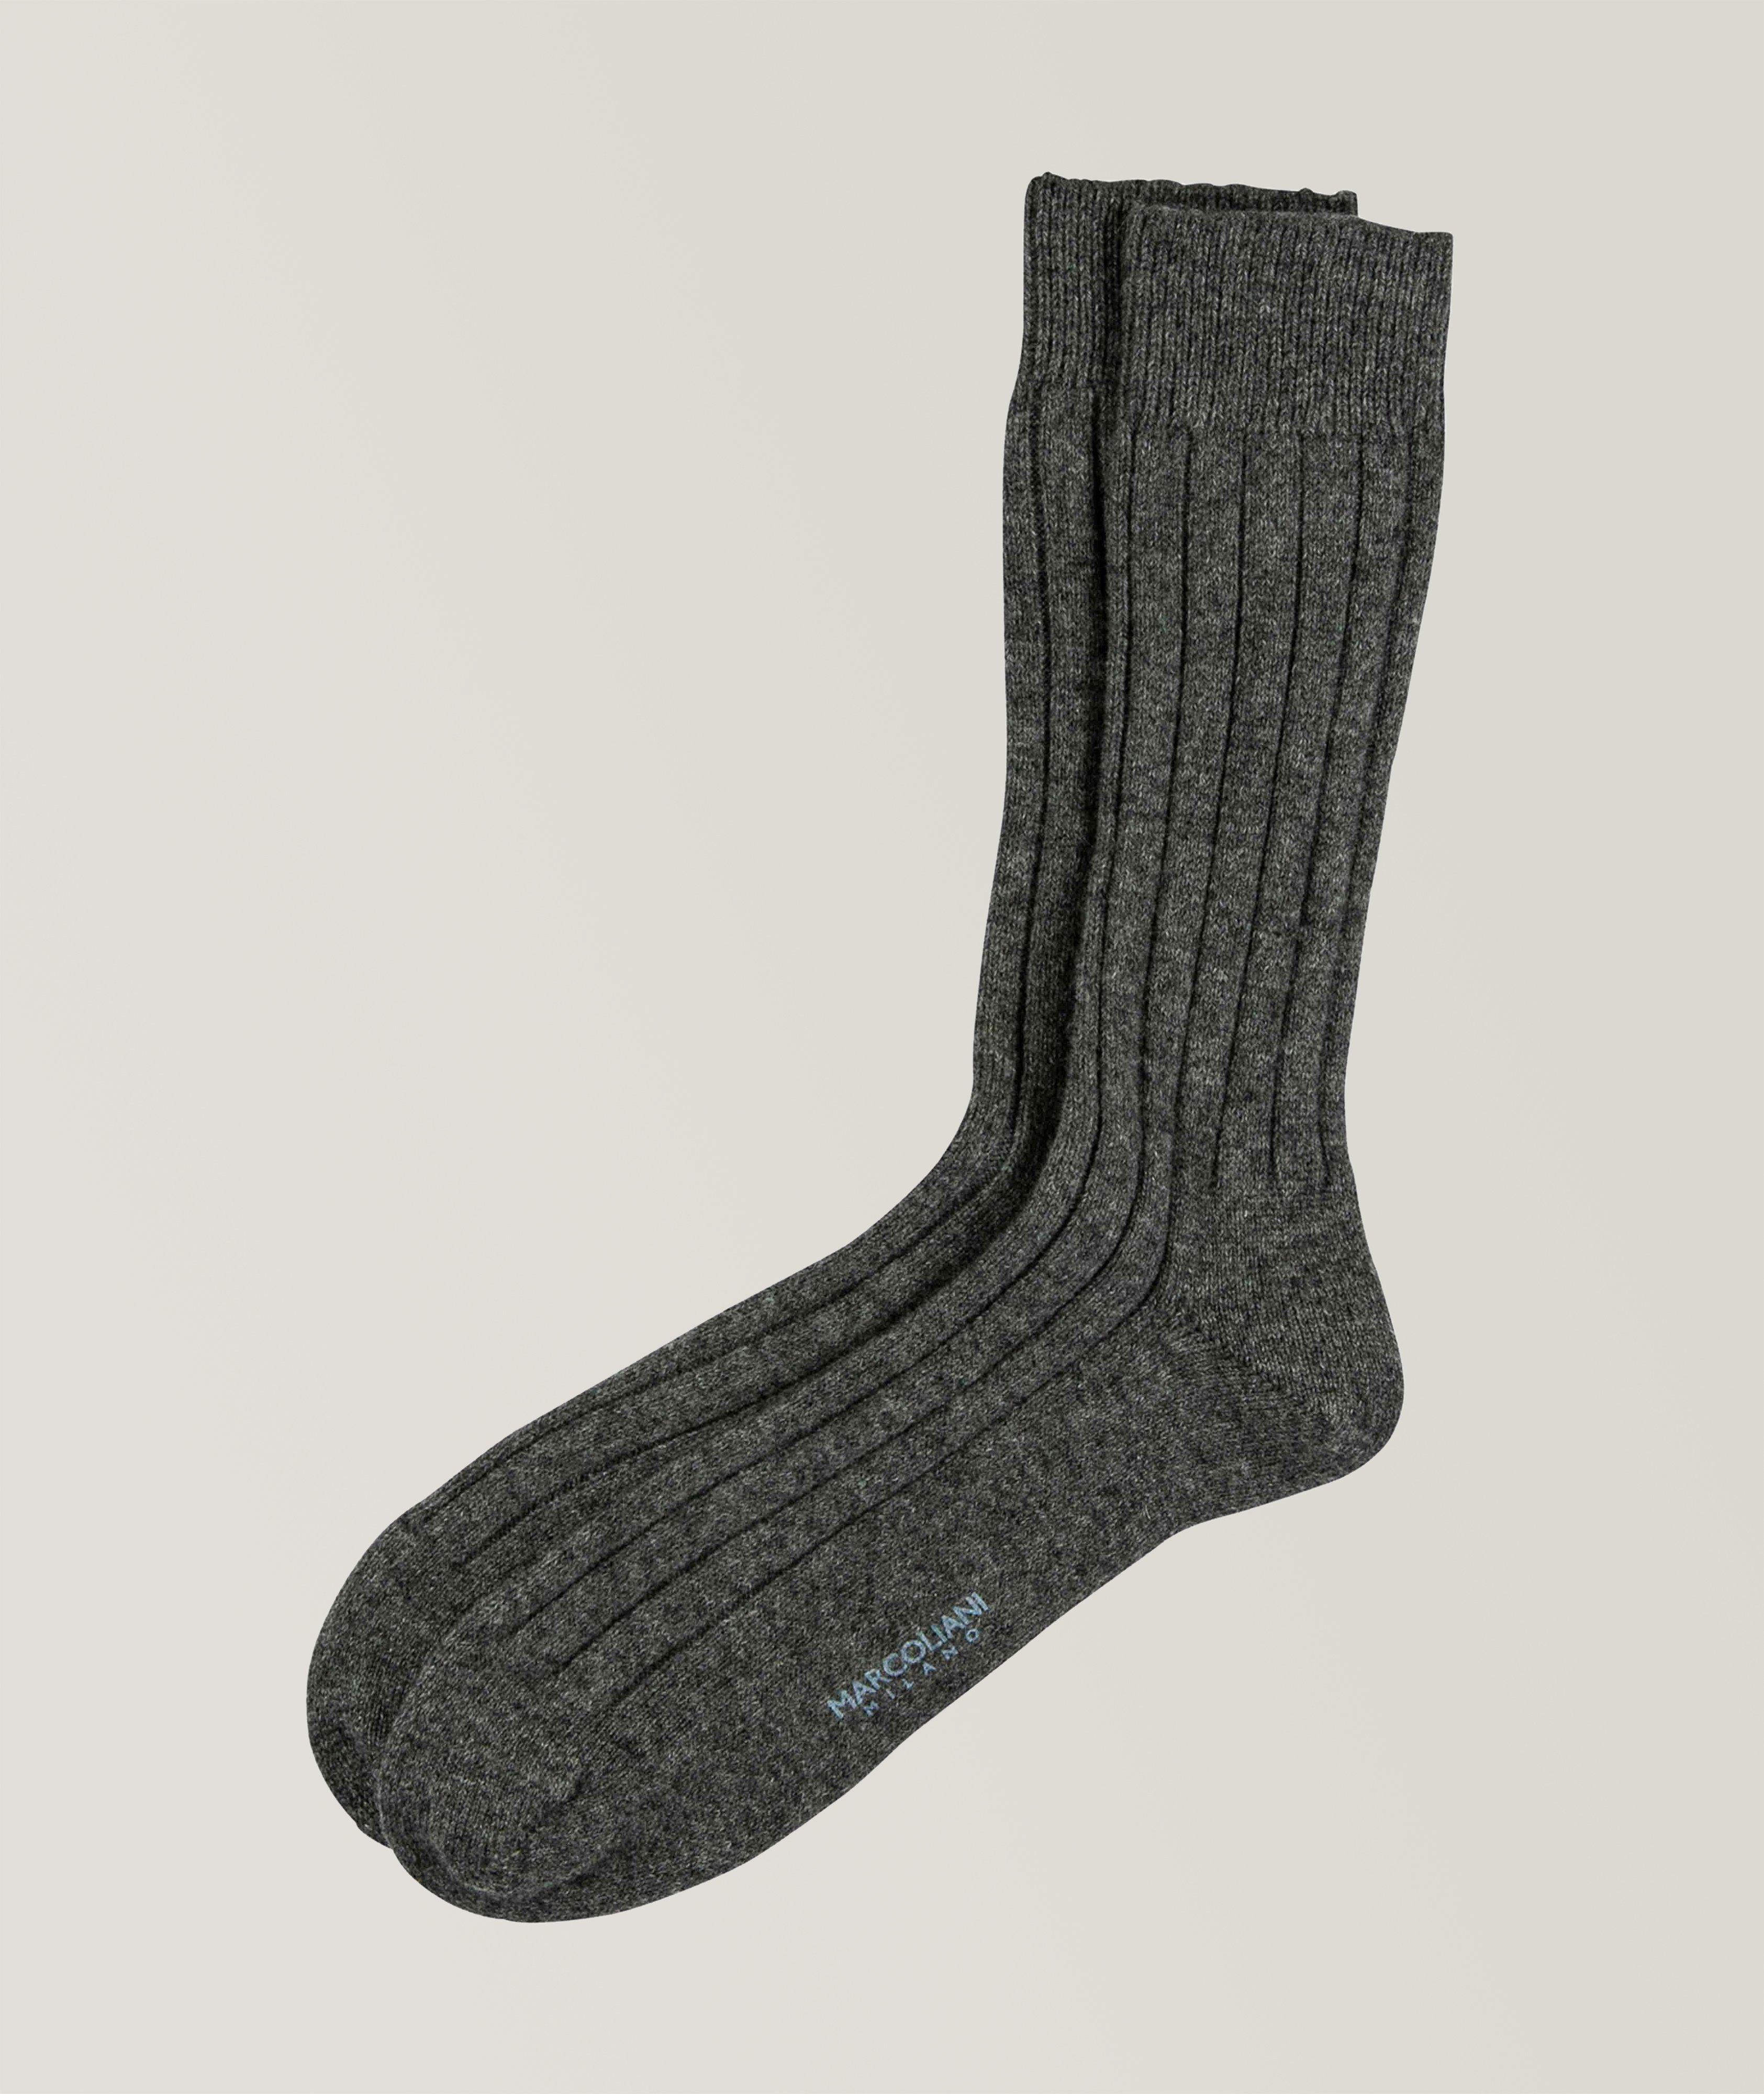 Cashmere Blend Socks image 0